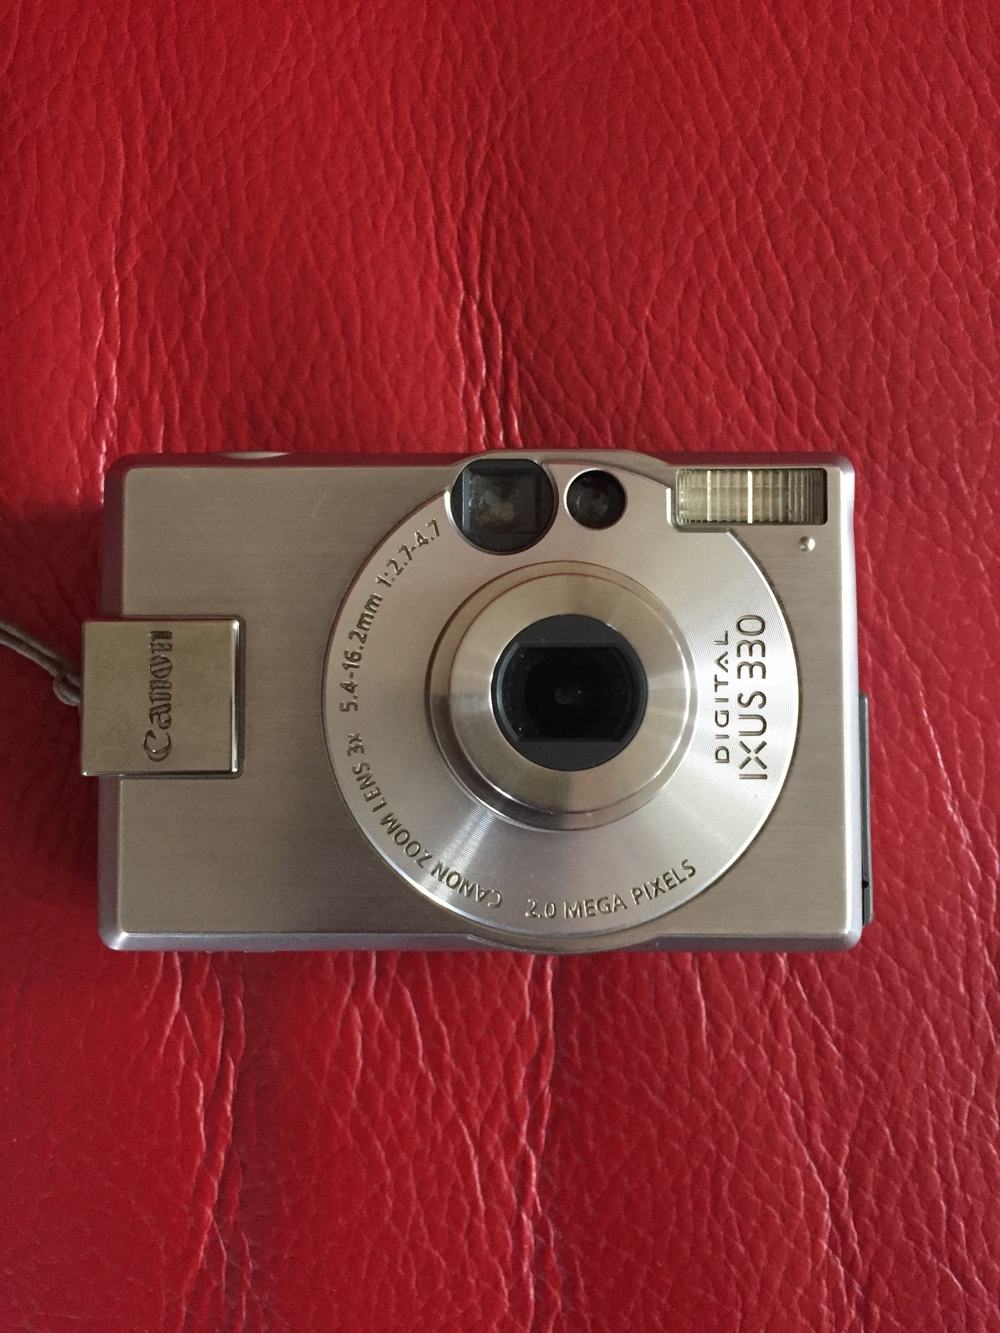 Canon Ixus 330 Digitalcamera mit Beschreibung und Ladegerät